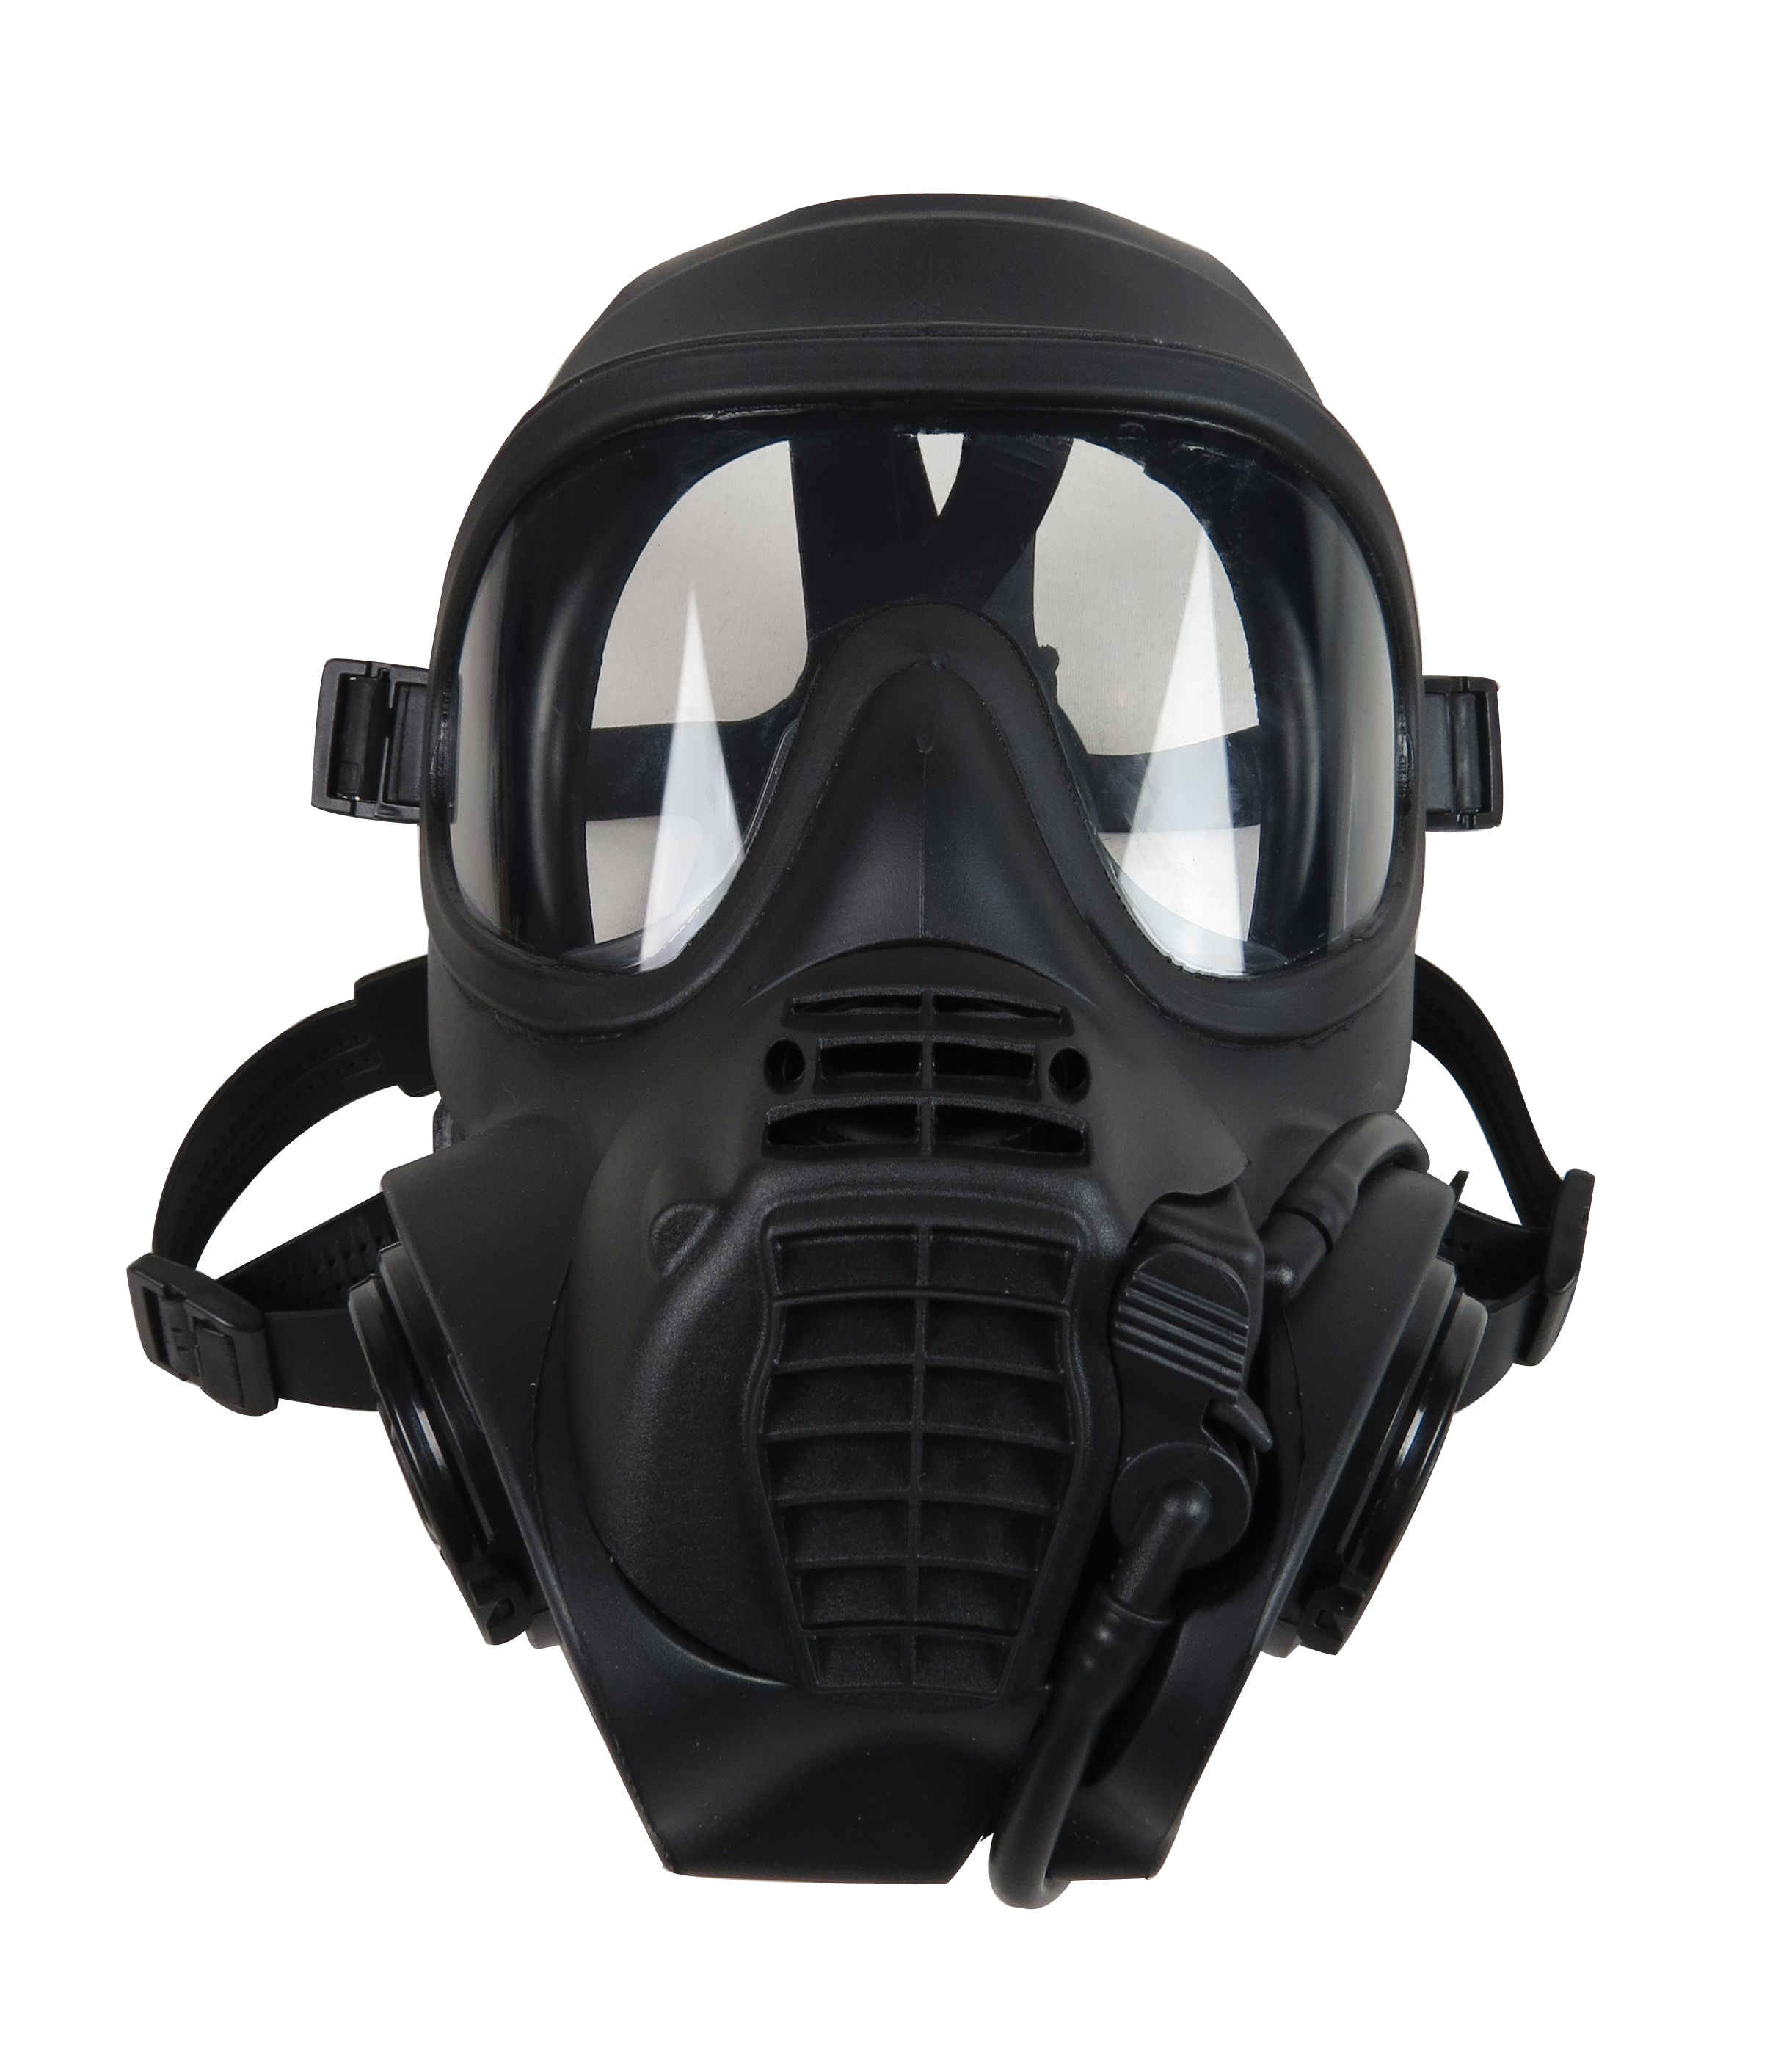 Used British Gsr Gas Mask By British Army